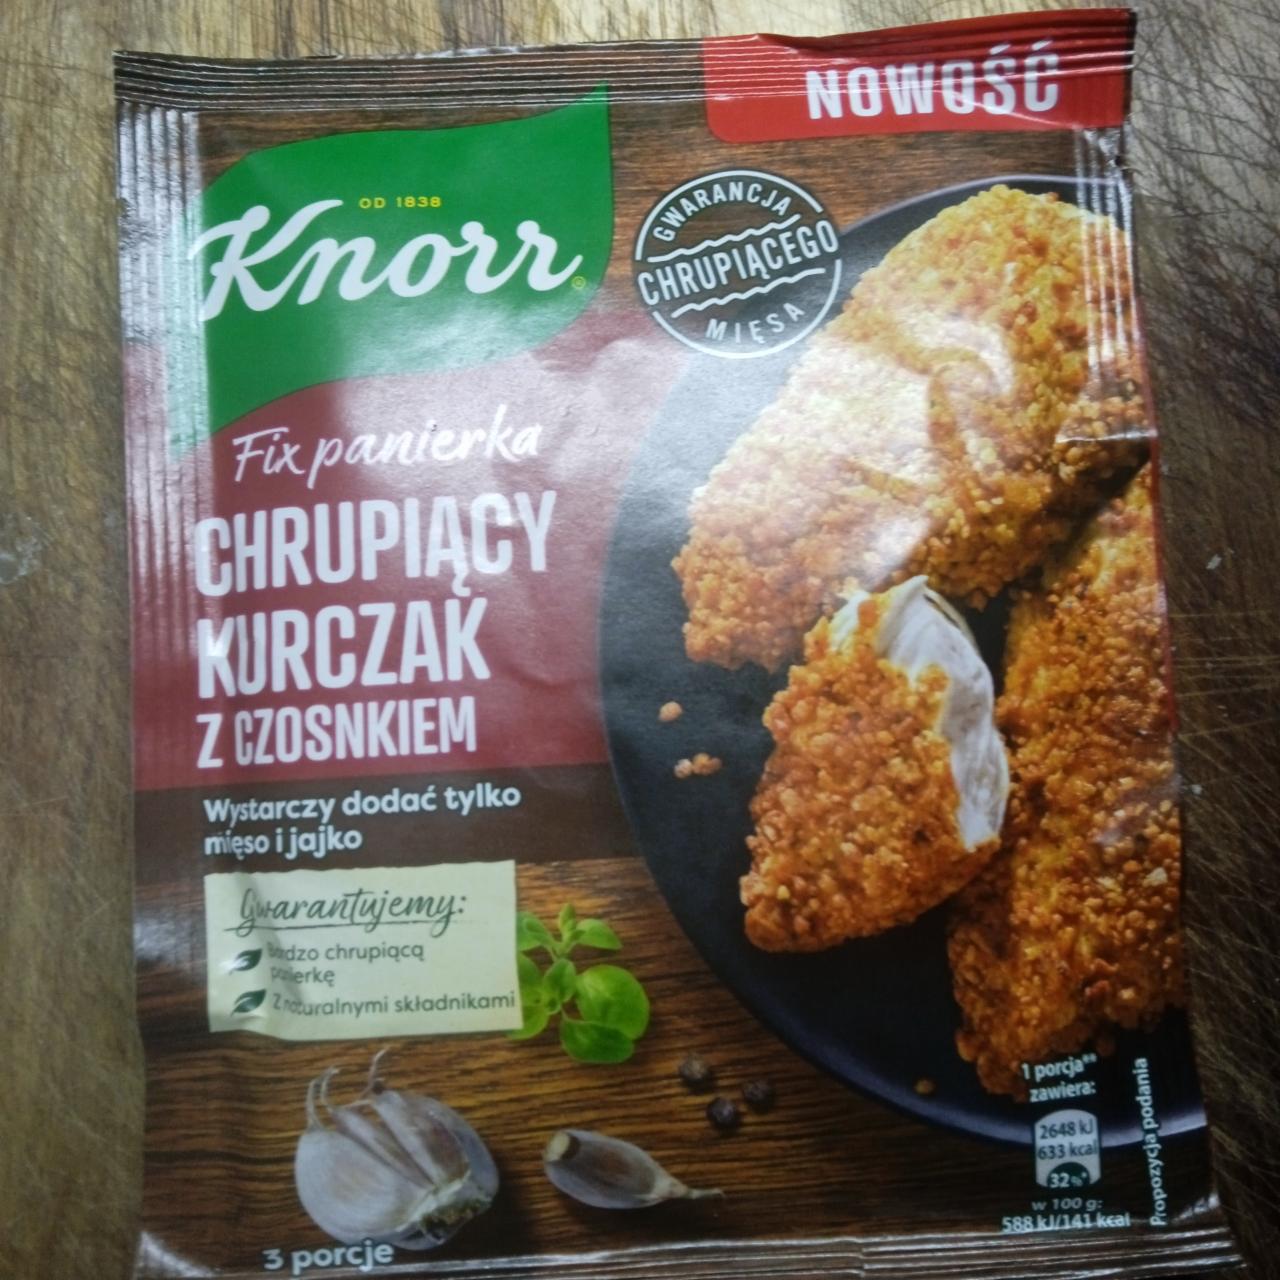 Zdjęcia - Fix panierka Chrupiacy kurczak z czosnkiem Knorr